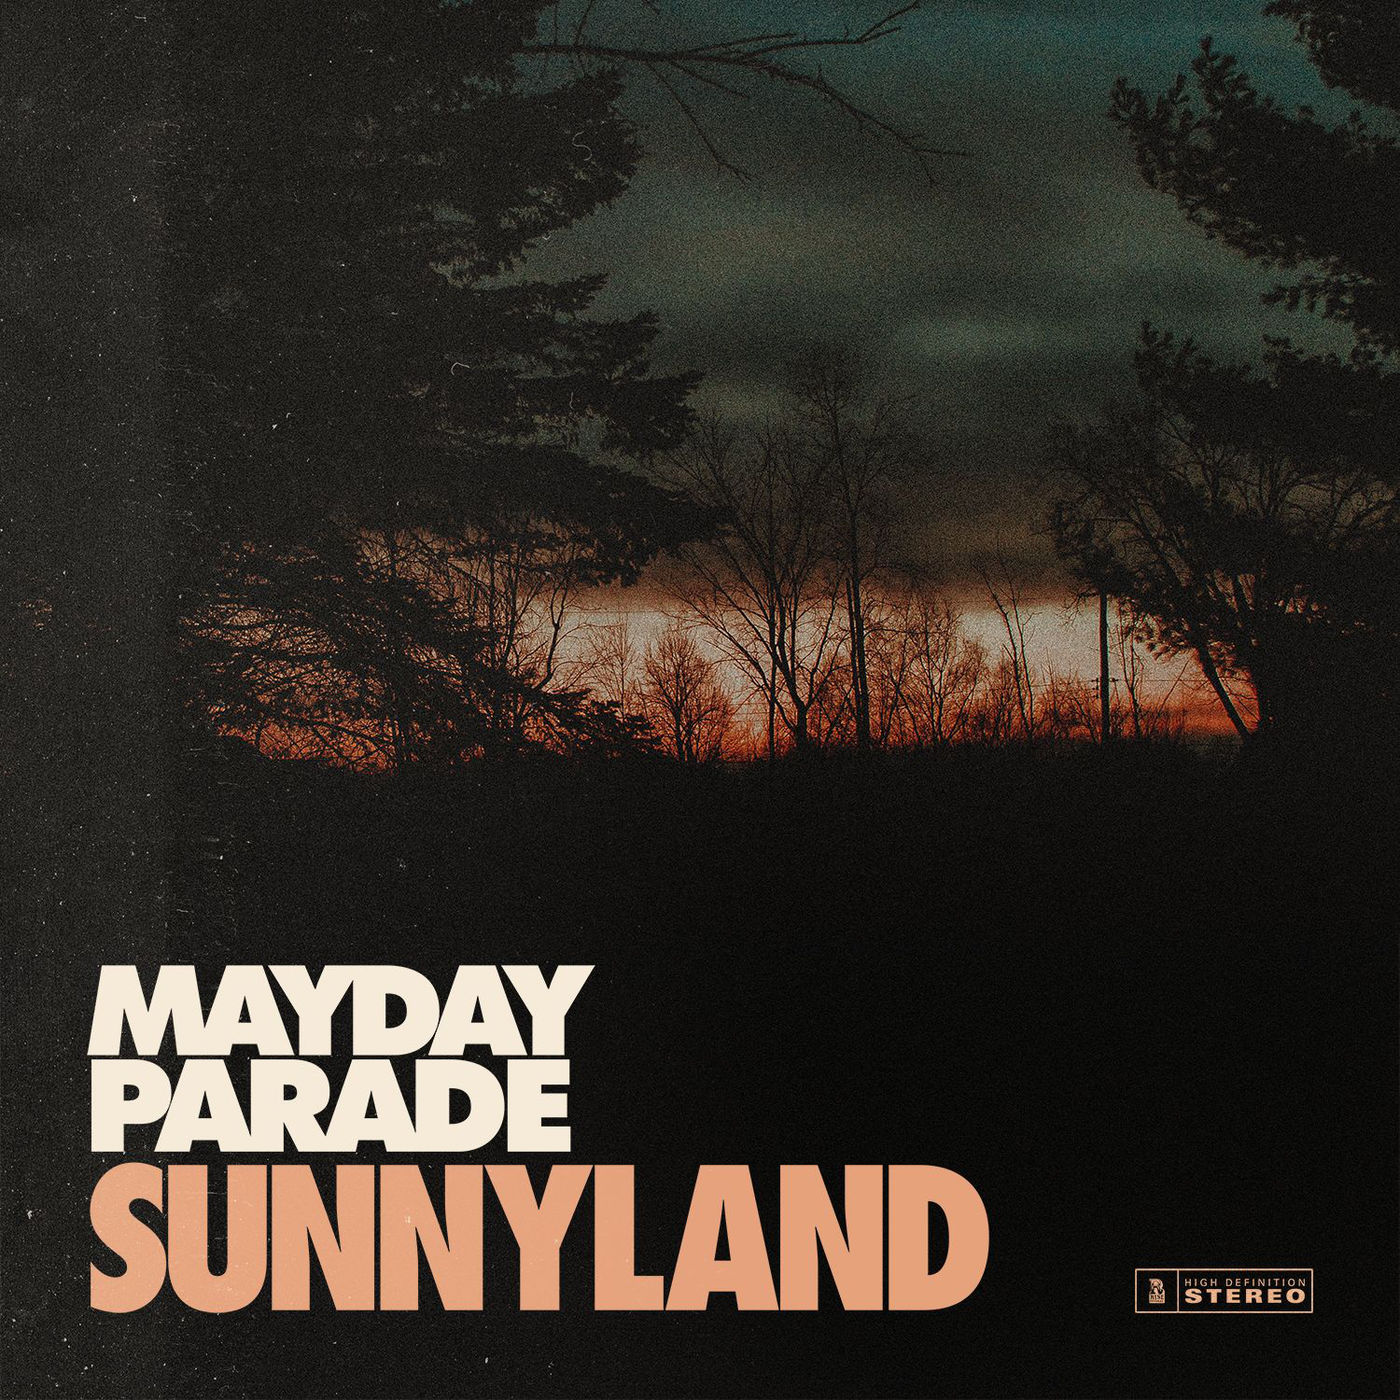 Mayday Parade - Sunnyland (2018)